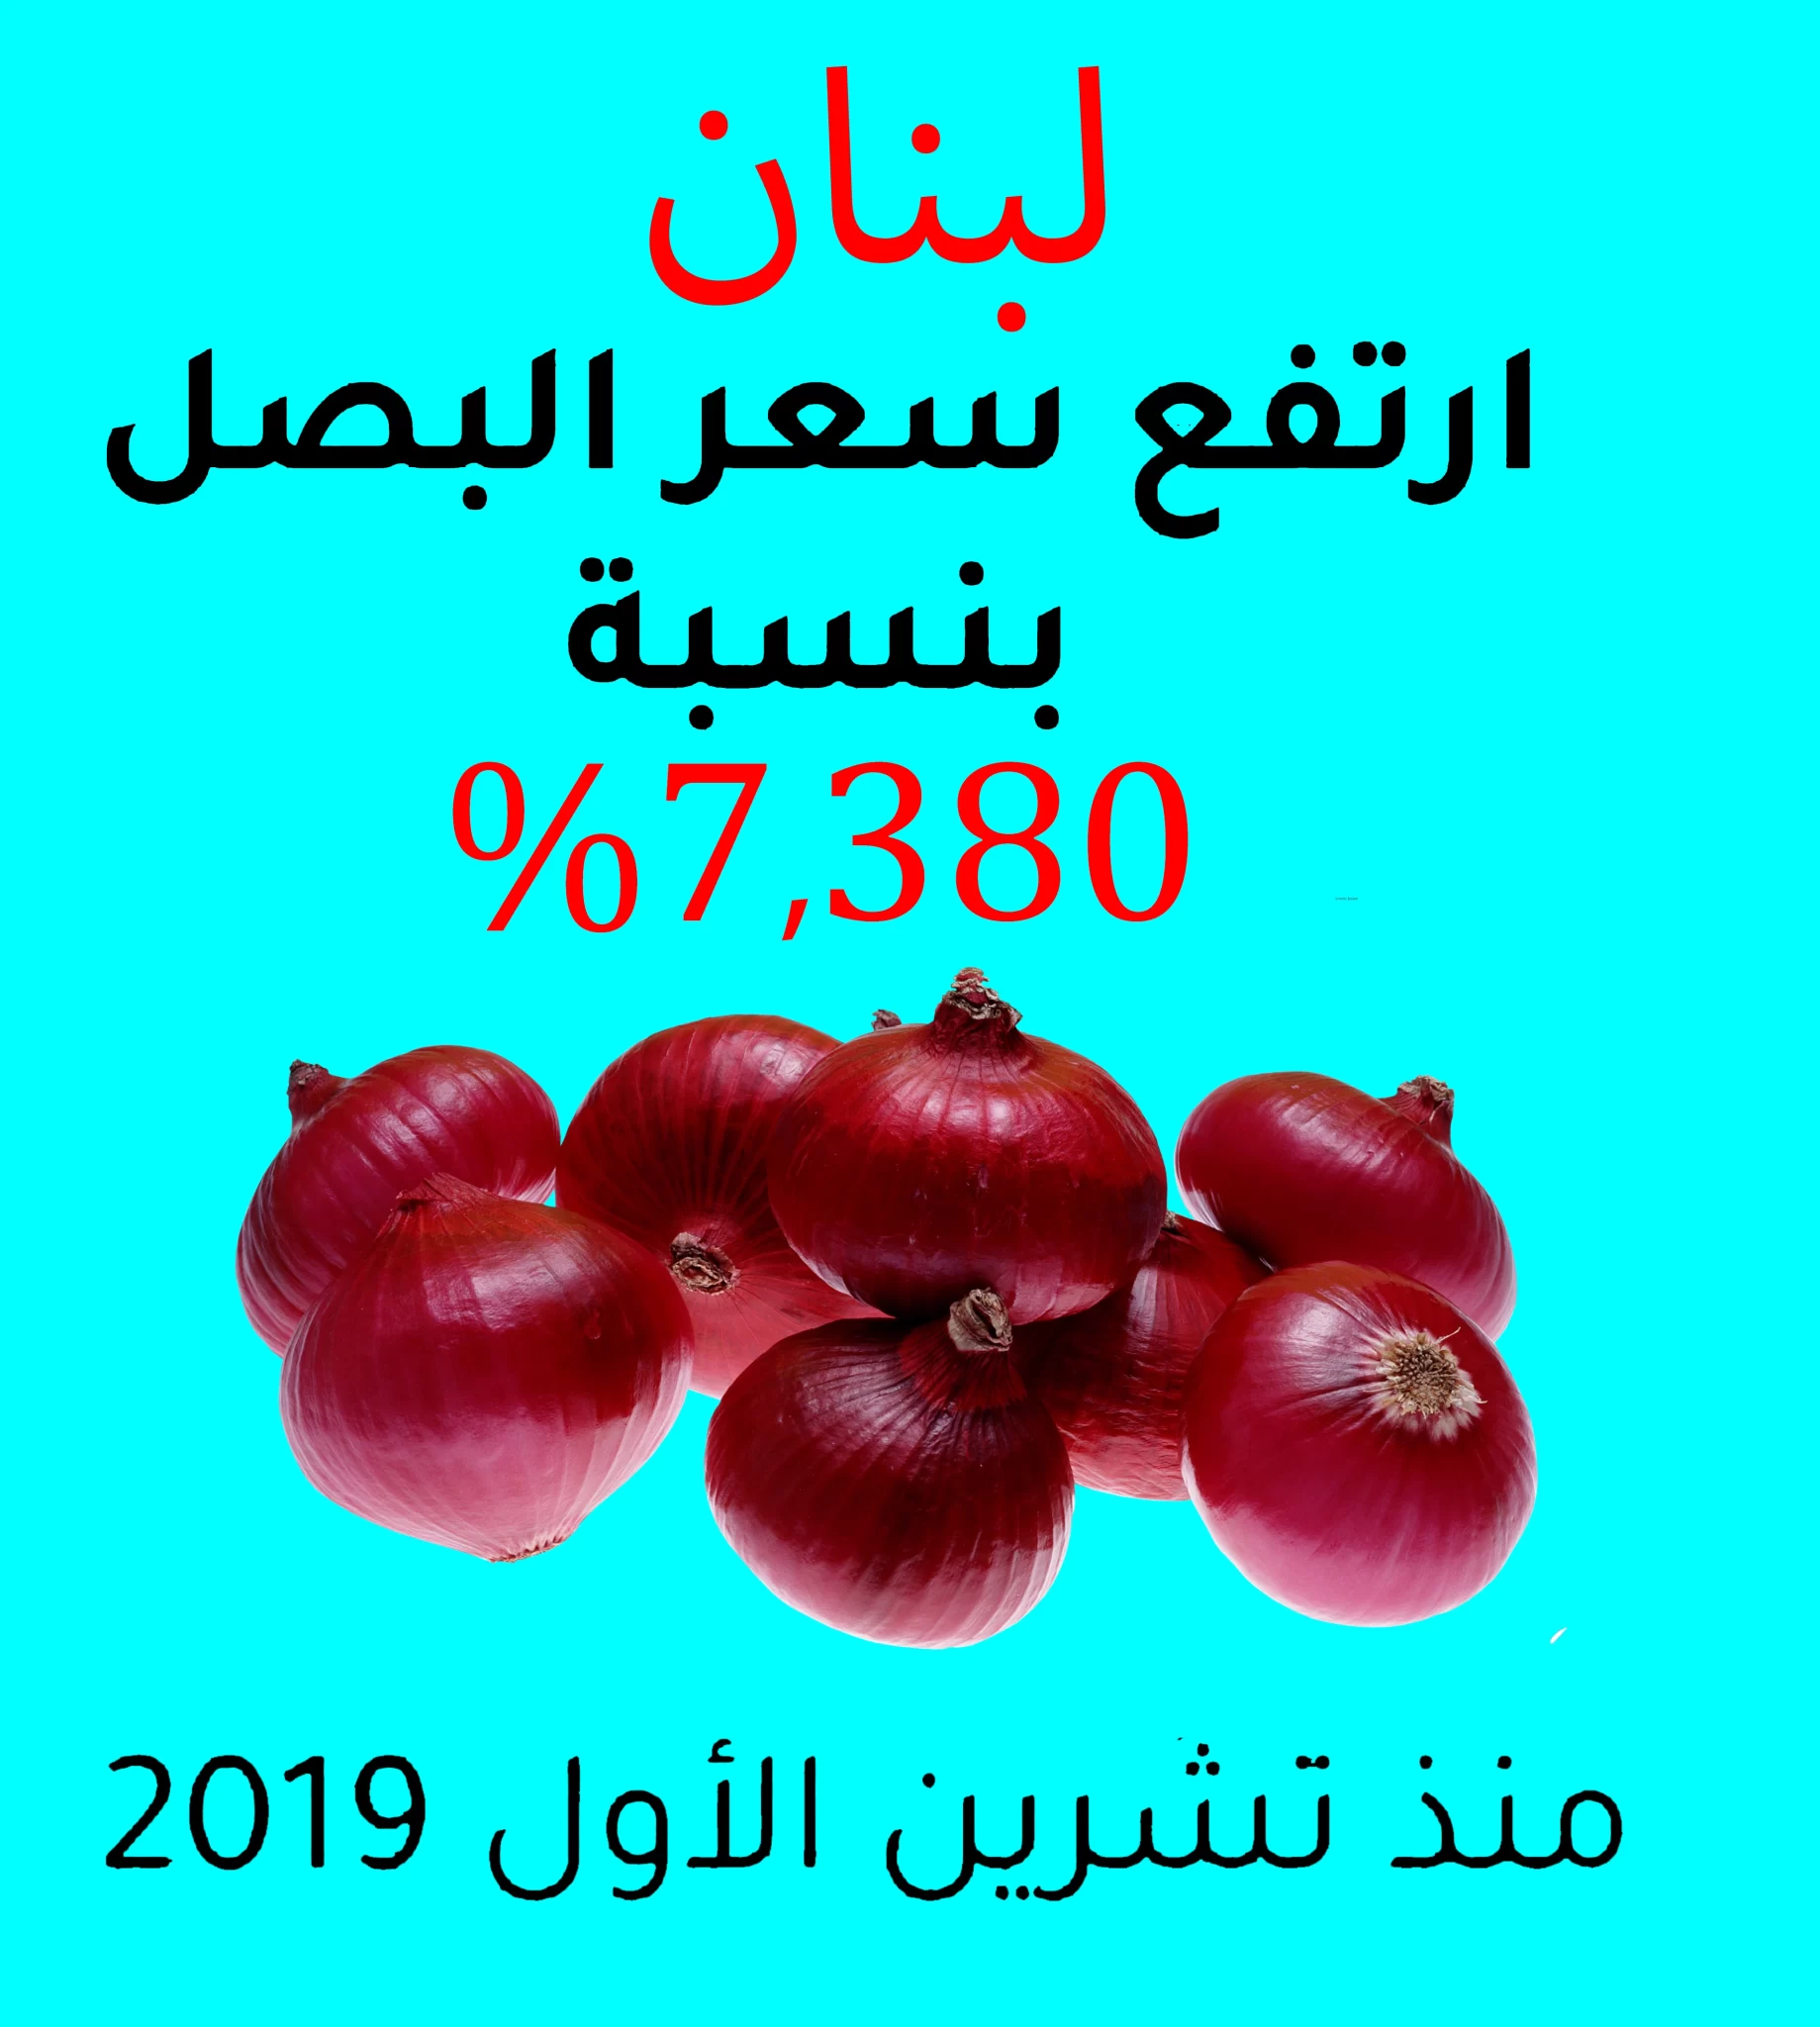 ارتفاع اسعار البصل في لبنان